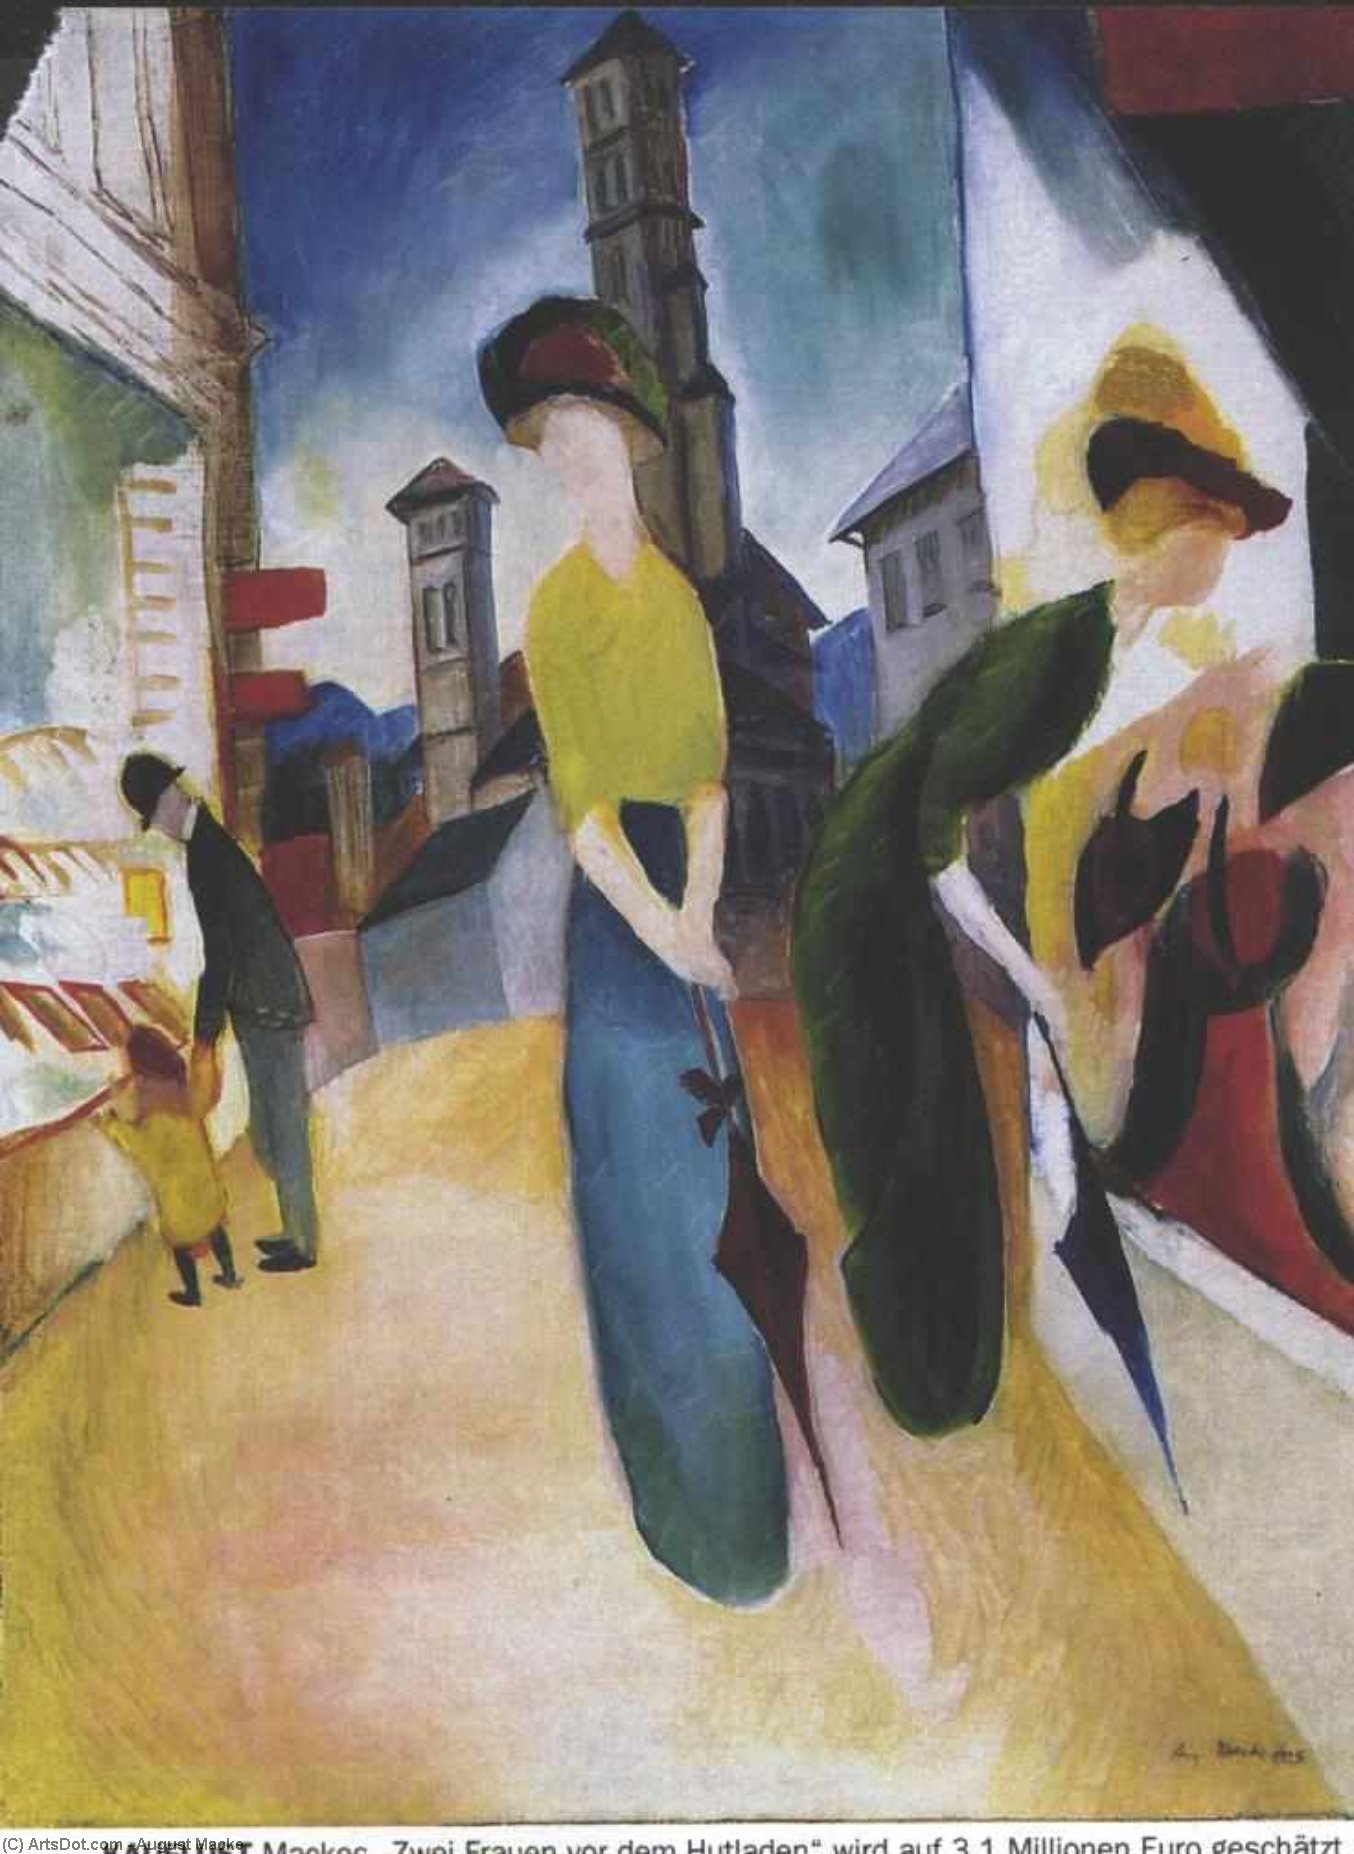 WikiOO.org - Encyclopedia of Fine Arts - Maleri, Artwork August Macke - Two women in front of a hat shop